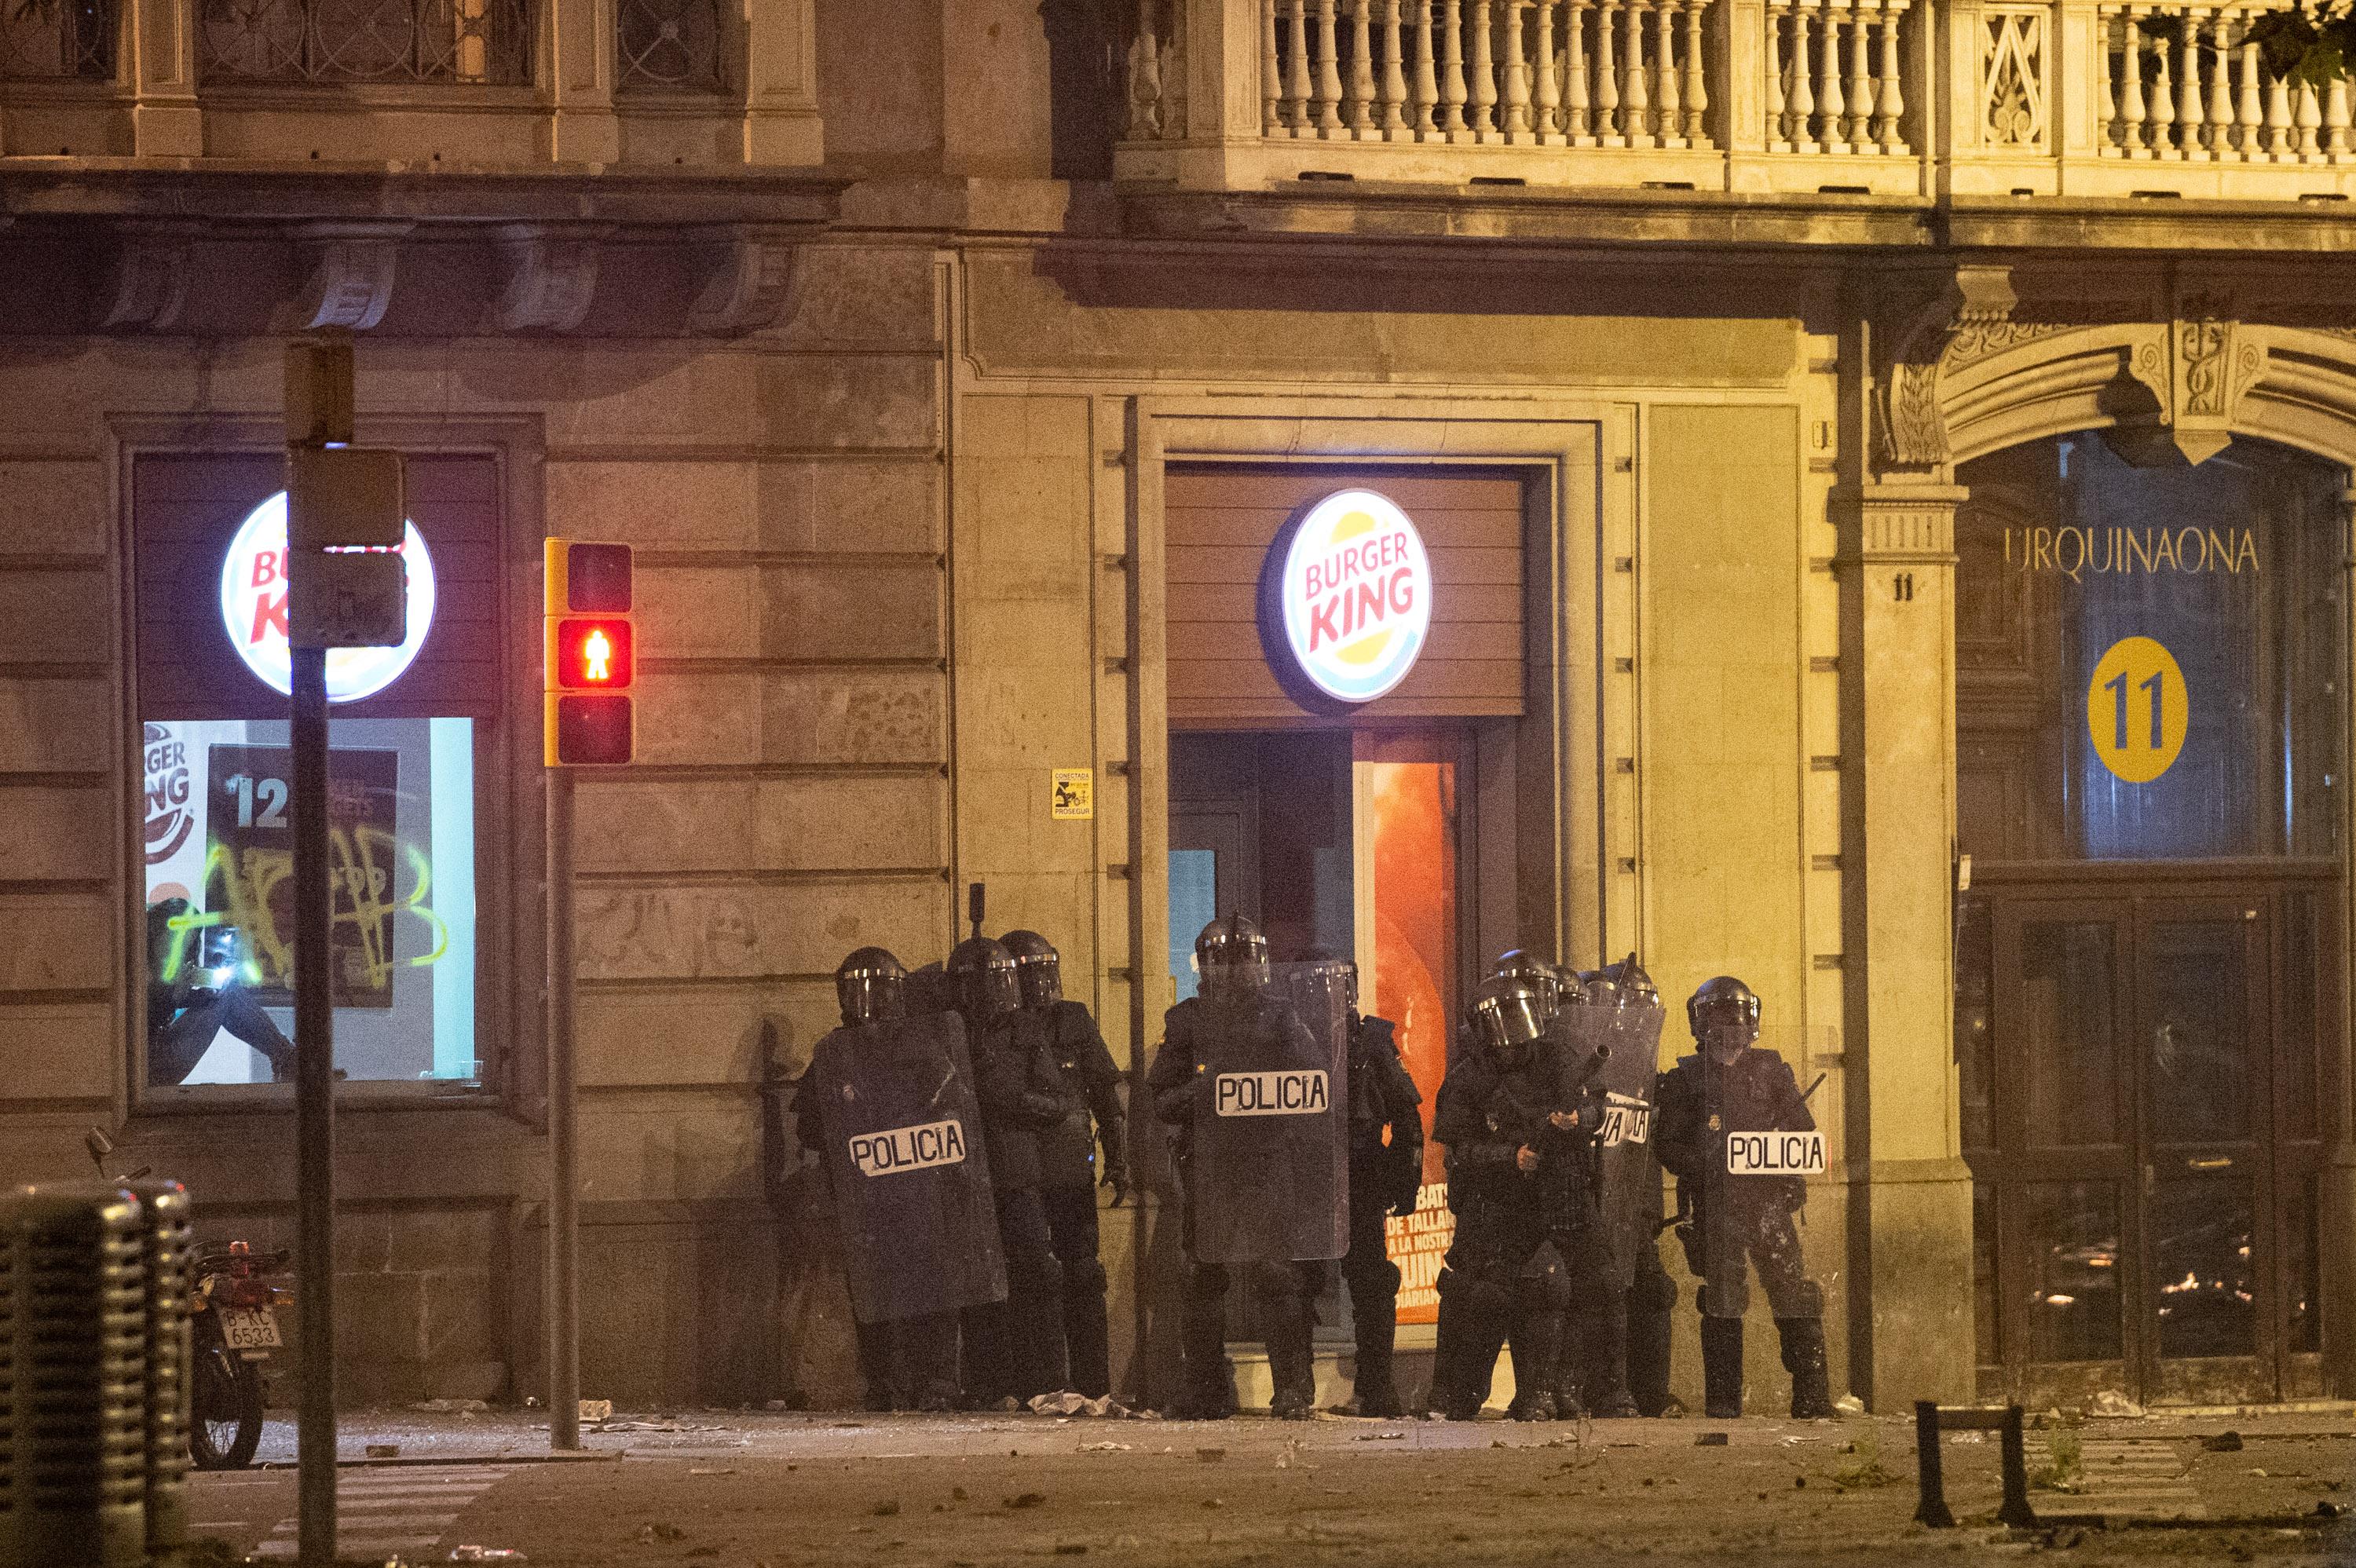 Agentes de la Policía Nacional a las puertas de un establecimiento durante los disturbios en la Plaza de Urquinaona en Barcelona a 18 de octubre de 2019 